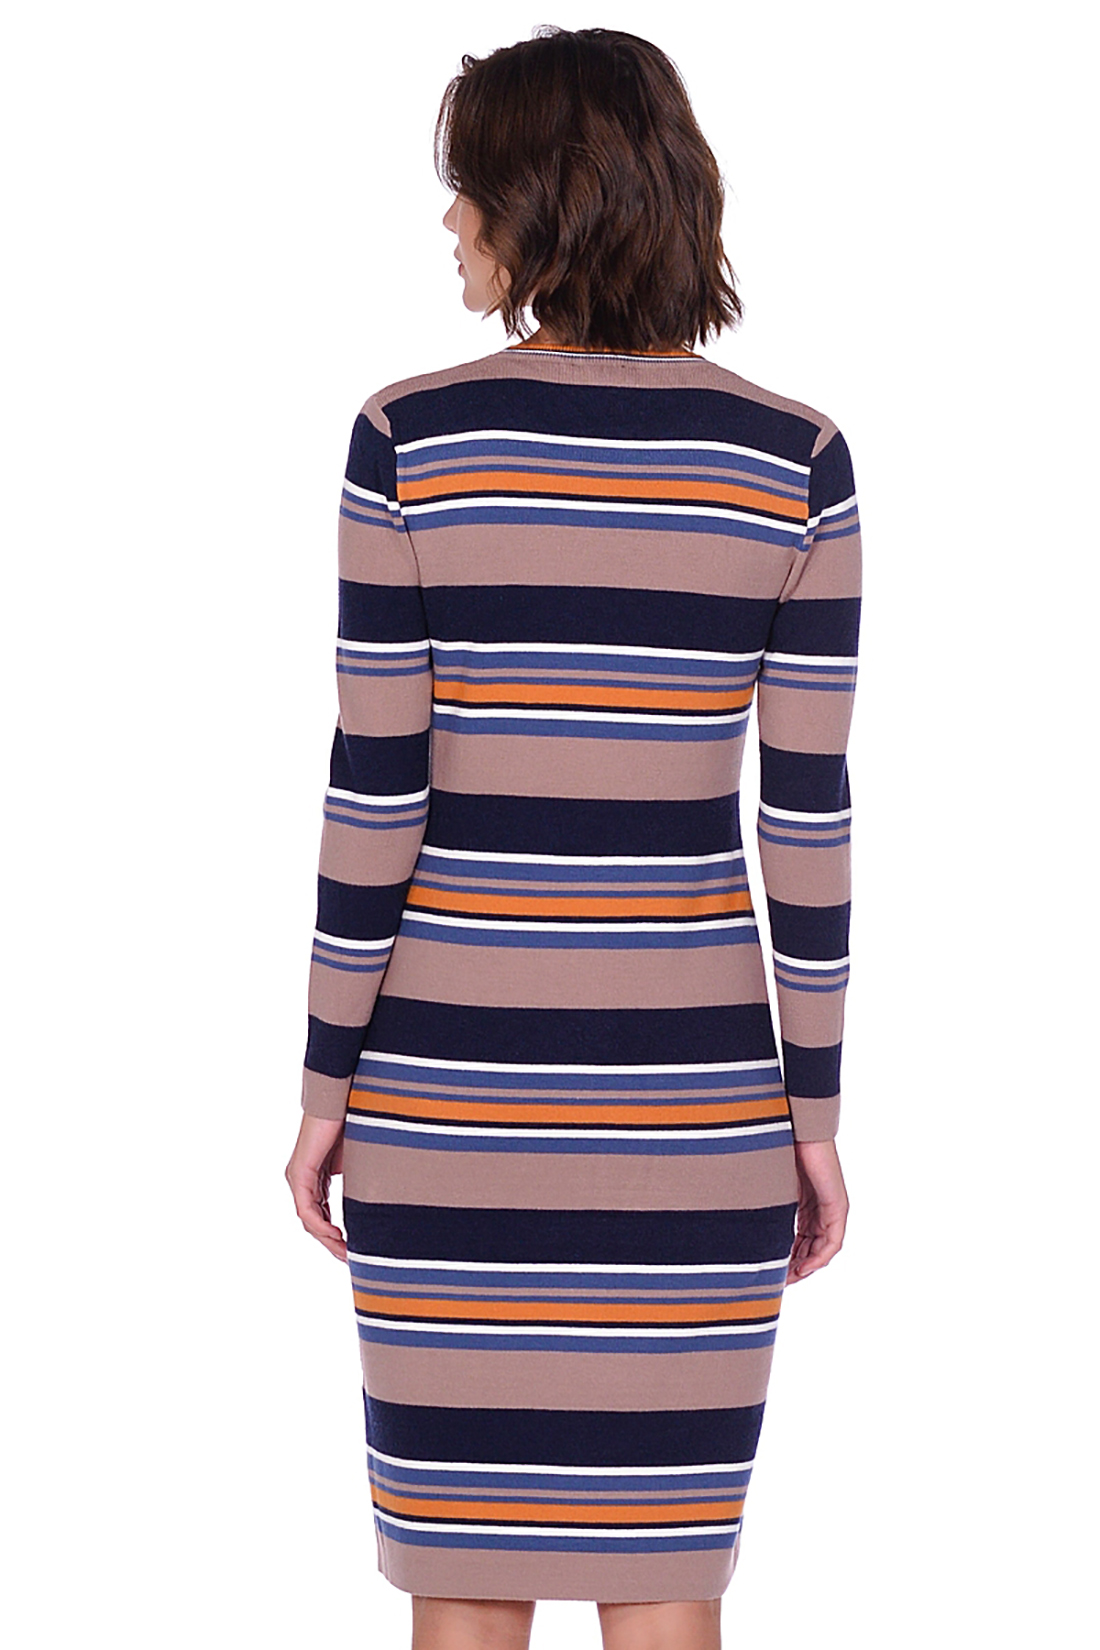 Платье из трикотажа в полоску (арт. baon B459536), размер L, цвет multicolor striped#многоцветный Платье из трикотажа в полоску (арт. baon B459536) - фото 3